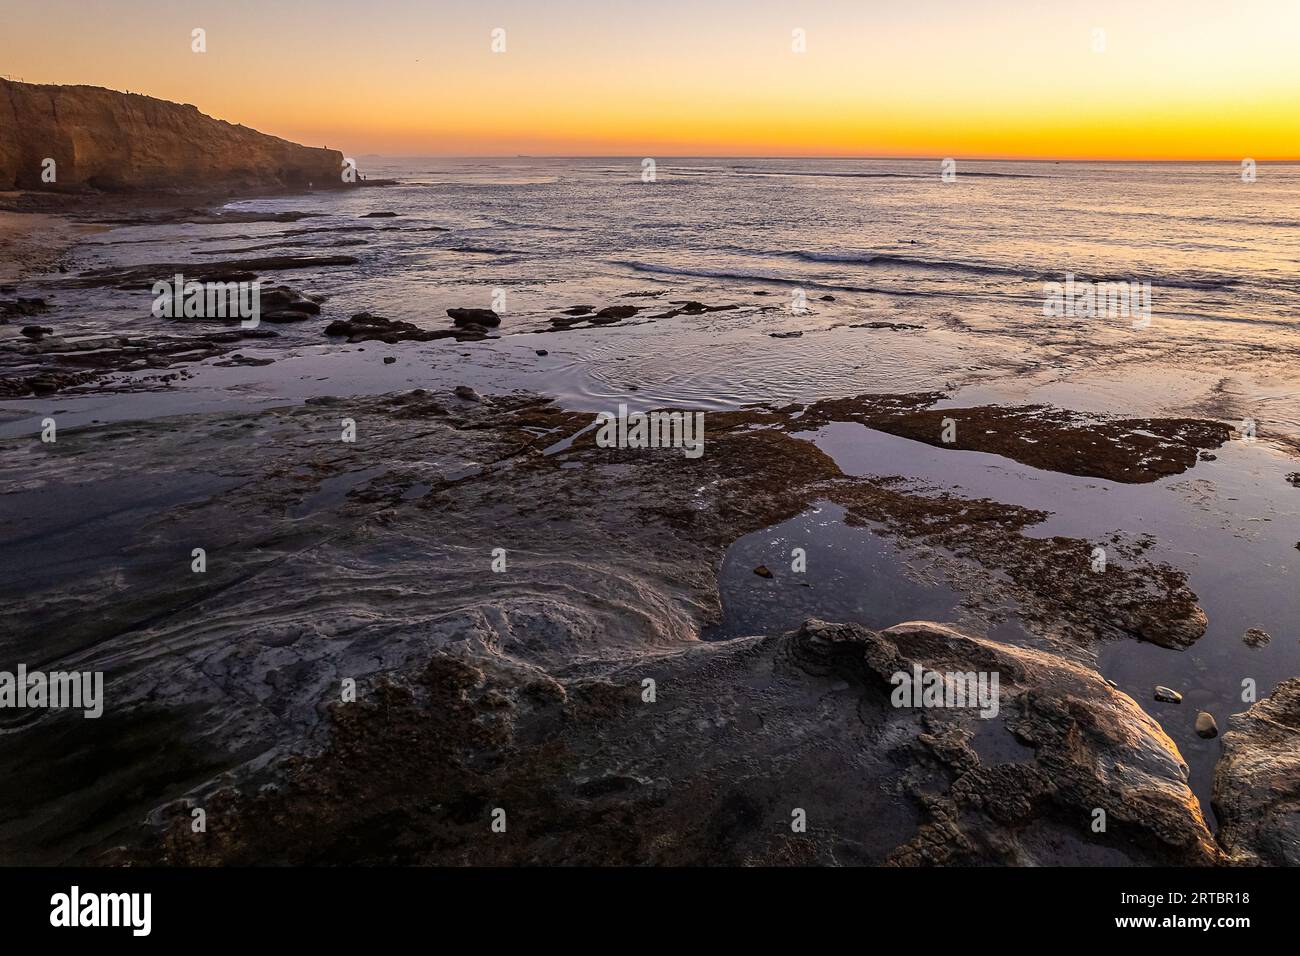 Vue sur la belle San Diego, Californie à Sunset Cliffs à point Loma. Avec l'océan Pacifique, une côte rocheuse et un horizon magique de coucher de soleil orange Banque D'Images